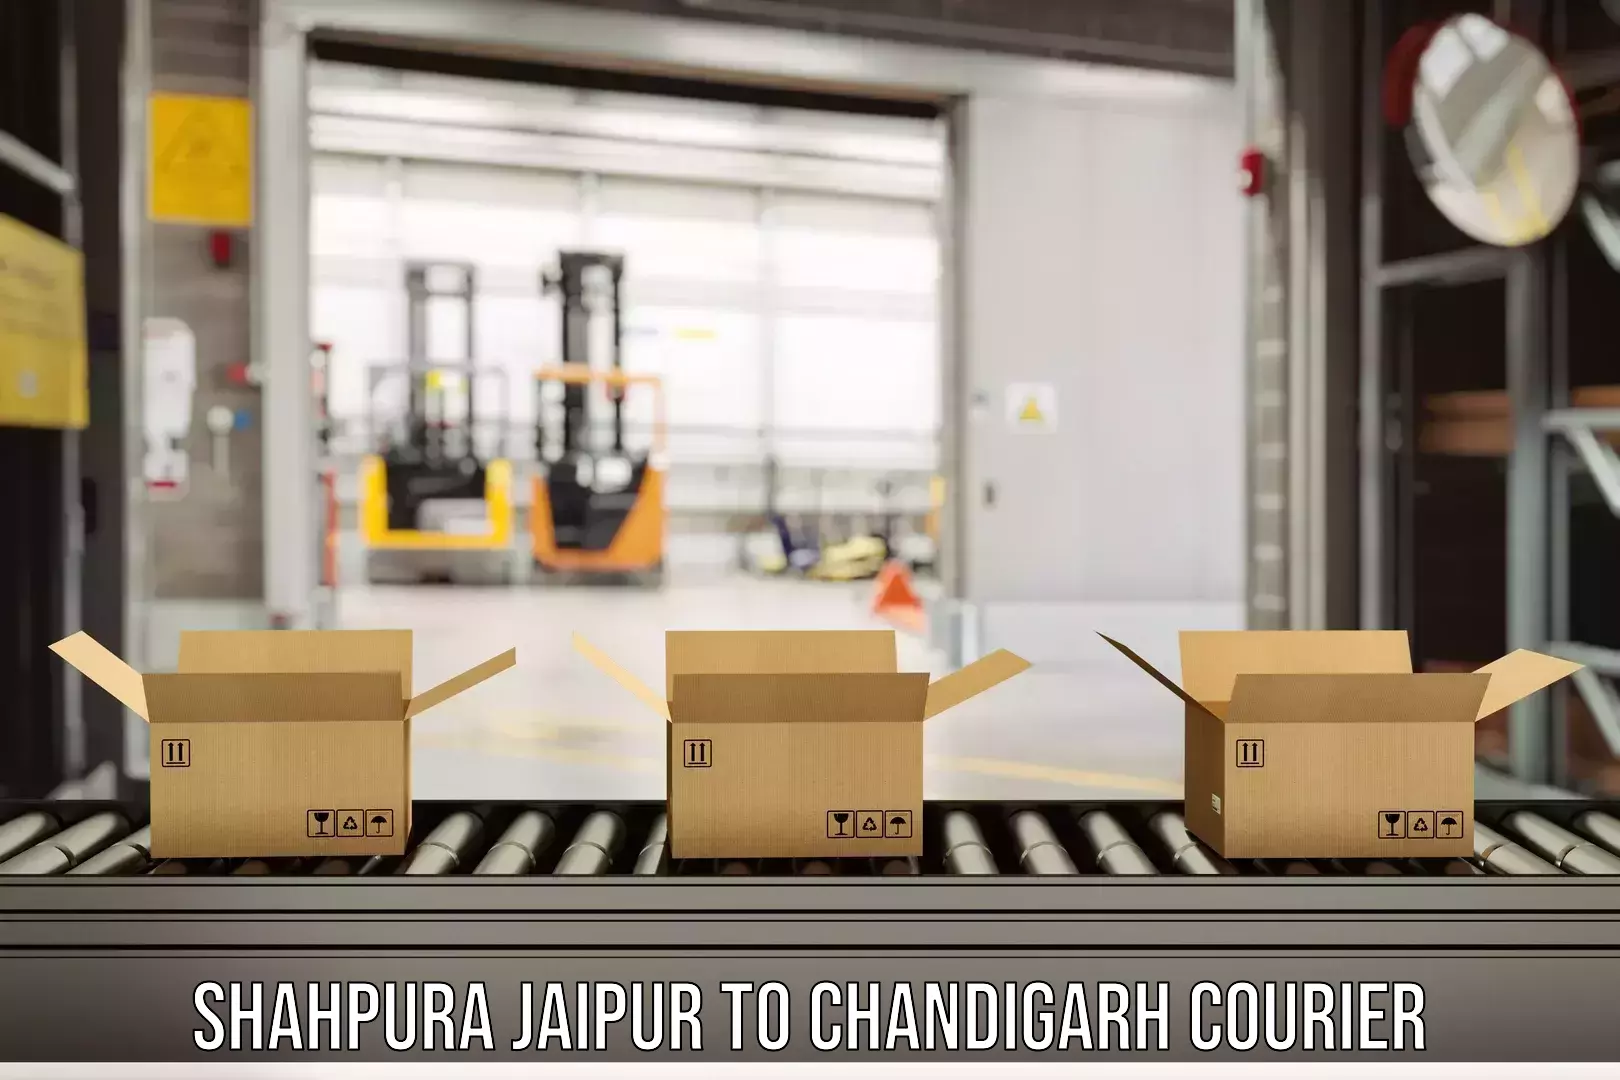 Full-service courier options Shahpura Jaipur to Chandigarh